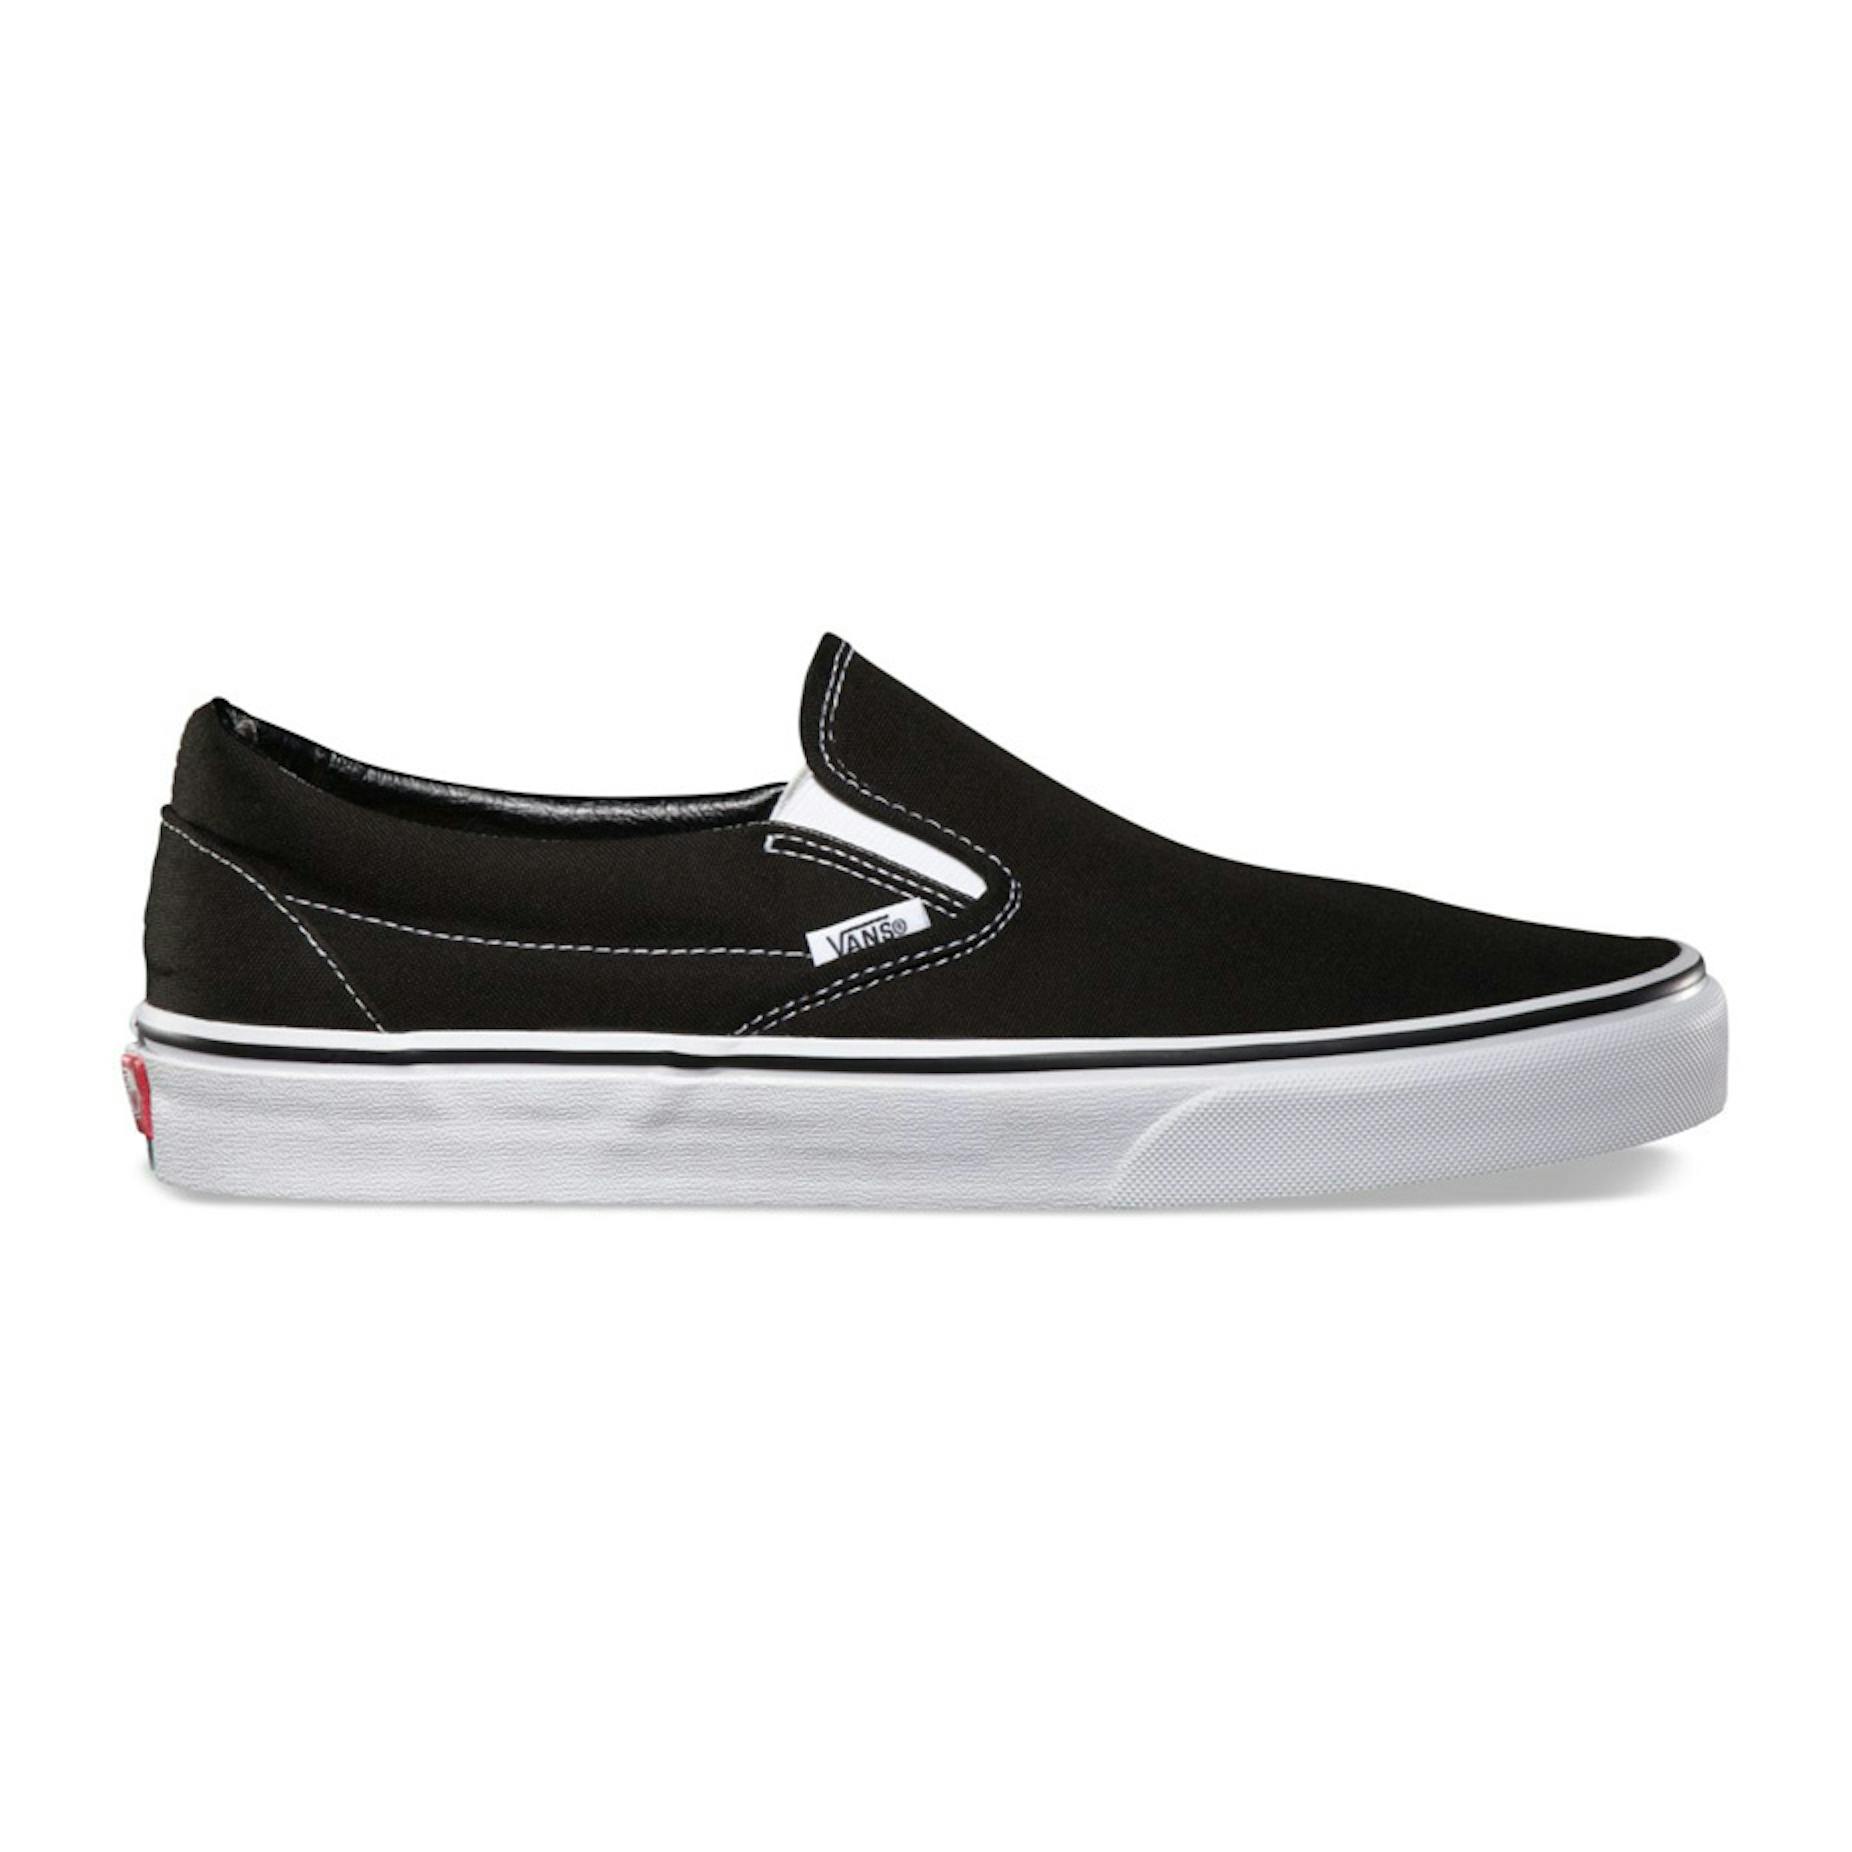 Vans Classic Slip-On Skate Shoe - Black / White | BOARDWORLD Store